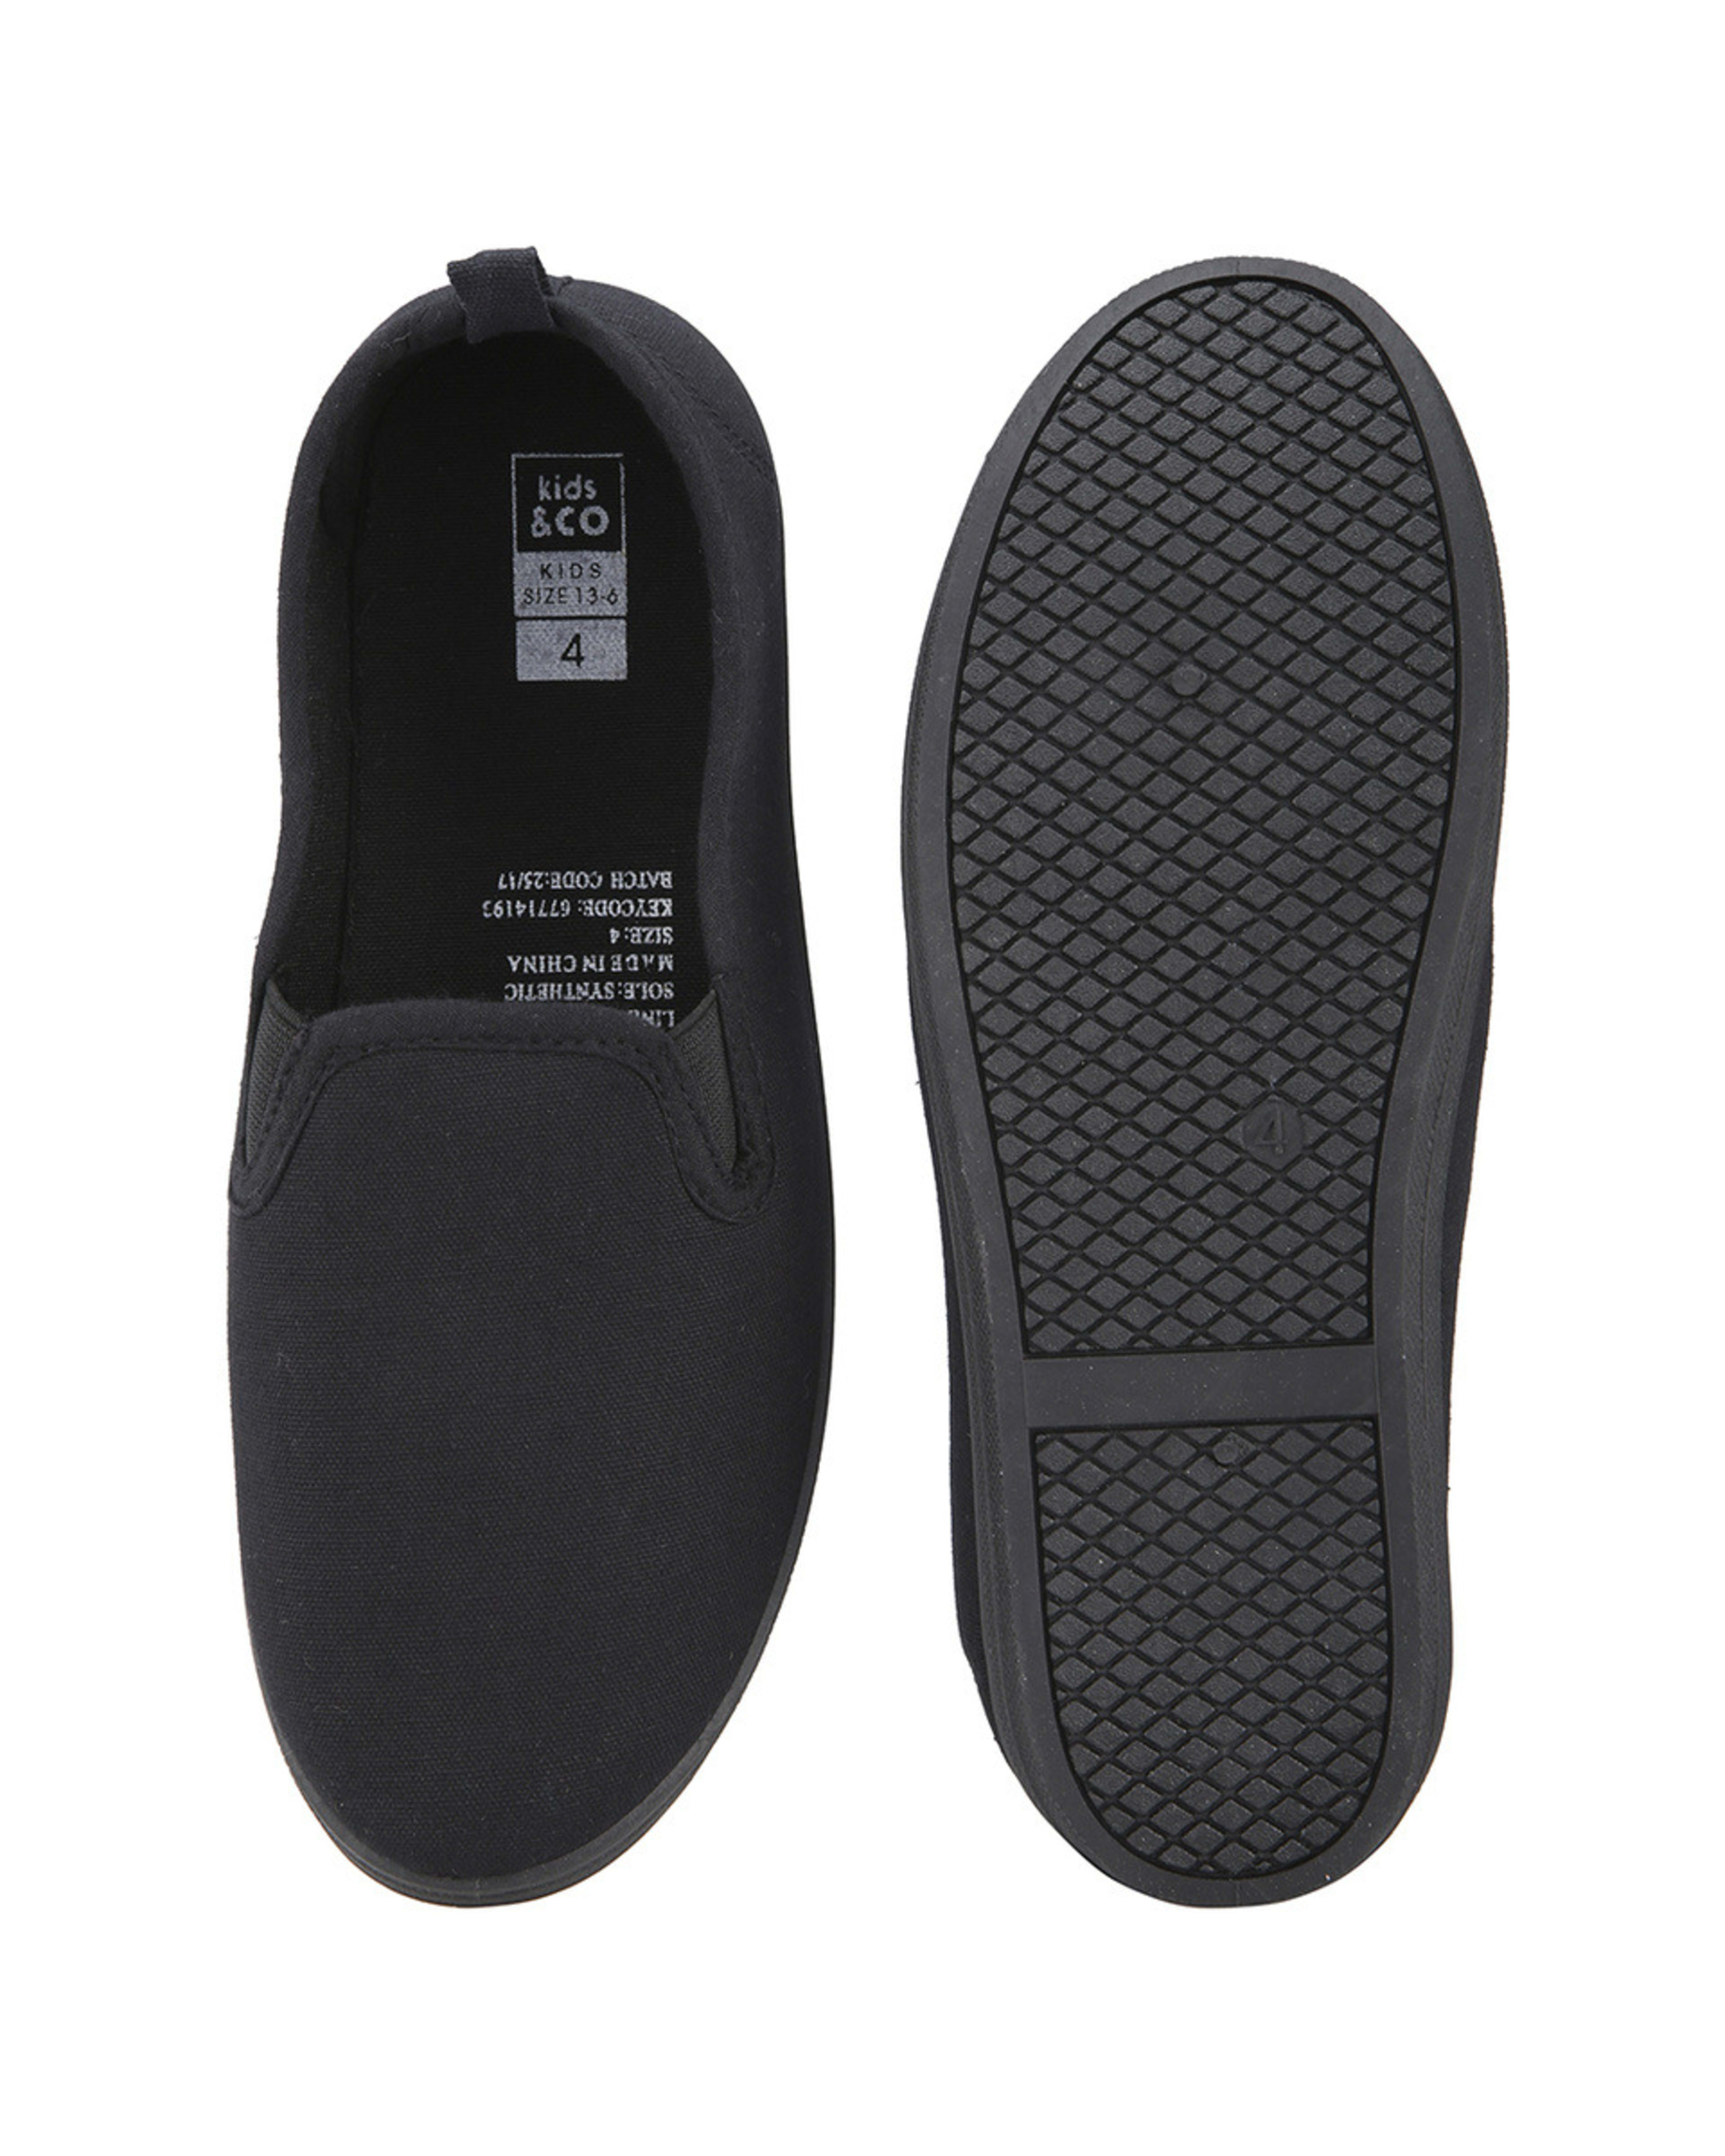 Senior Slip On Shoes - Kmart